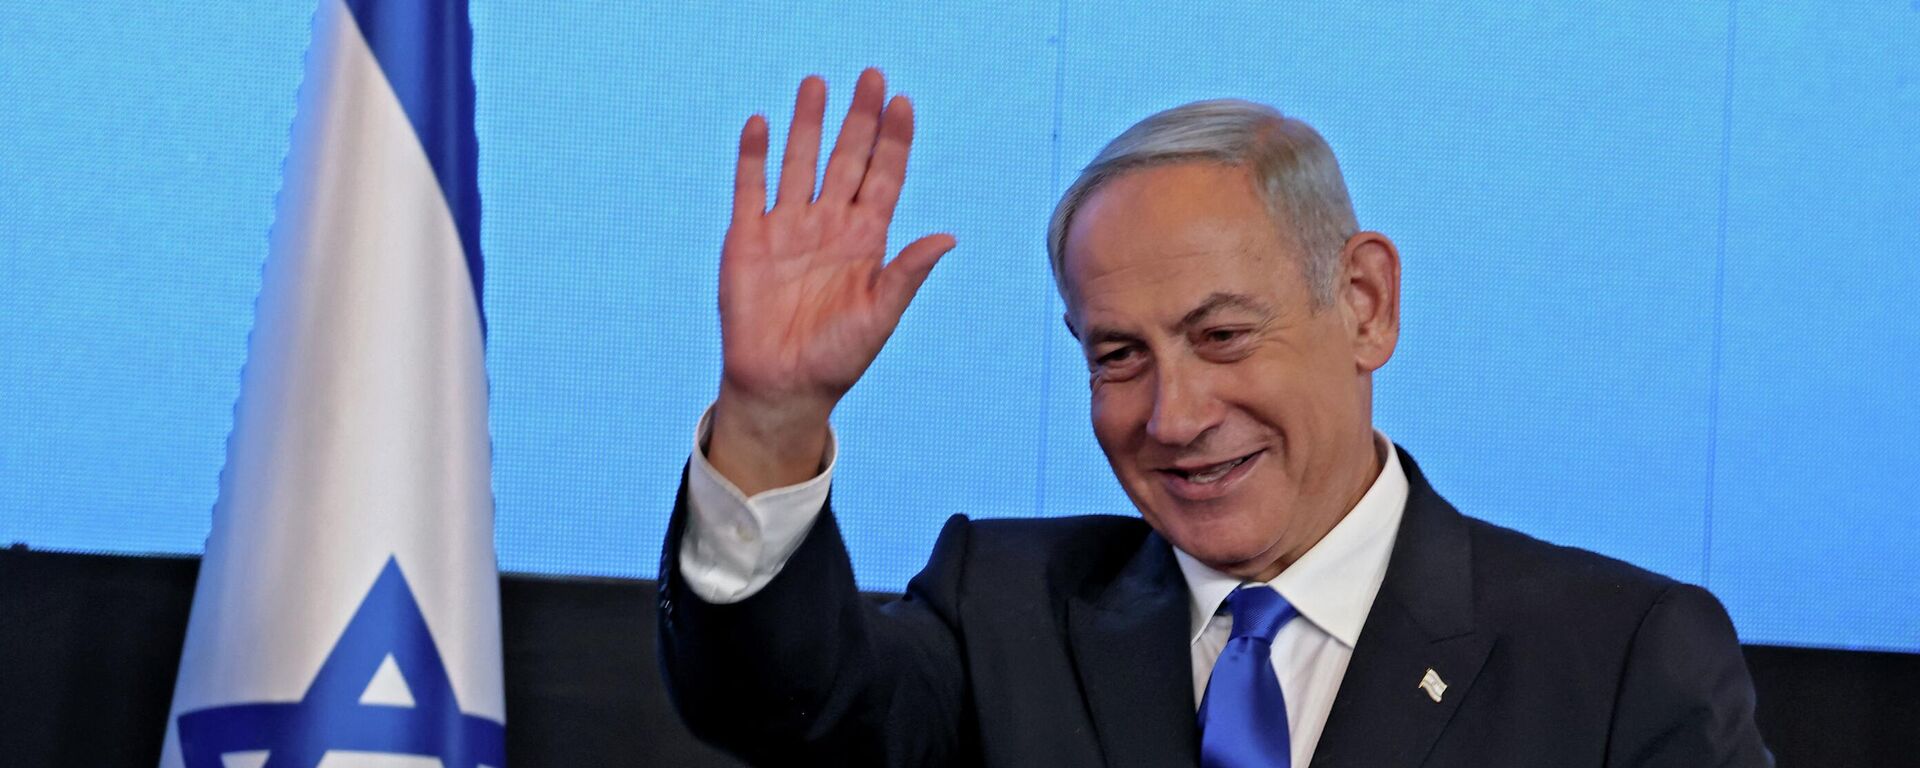 زعيم المعارضة الإسرائيلية بنيامين نتنياهو بعد فوزه في الانتخابات العامة في إسرائيل، نوفمبر/ تشرين الثاني 2022. - سبوتنيك عربي, 1920, 26.03.2023